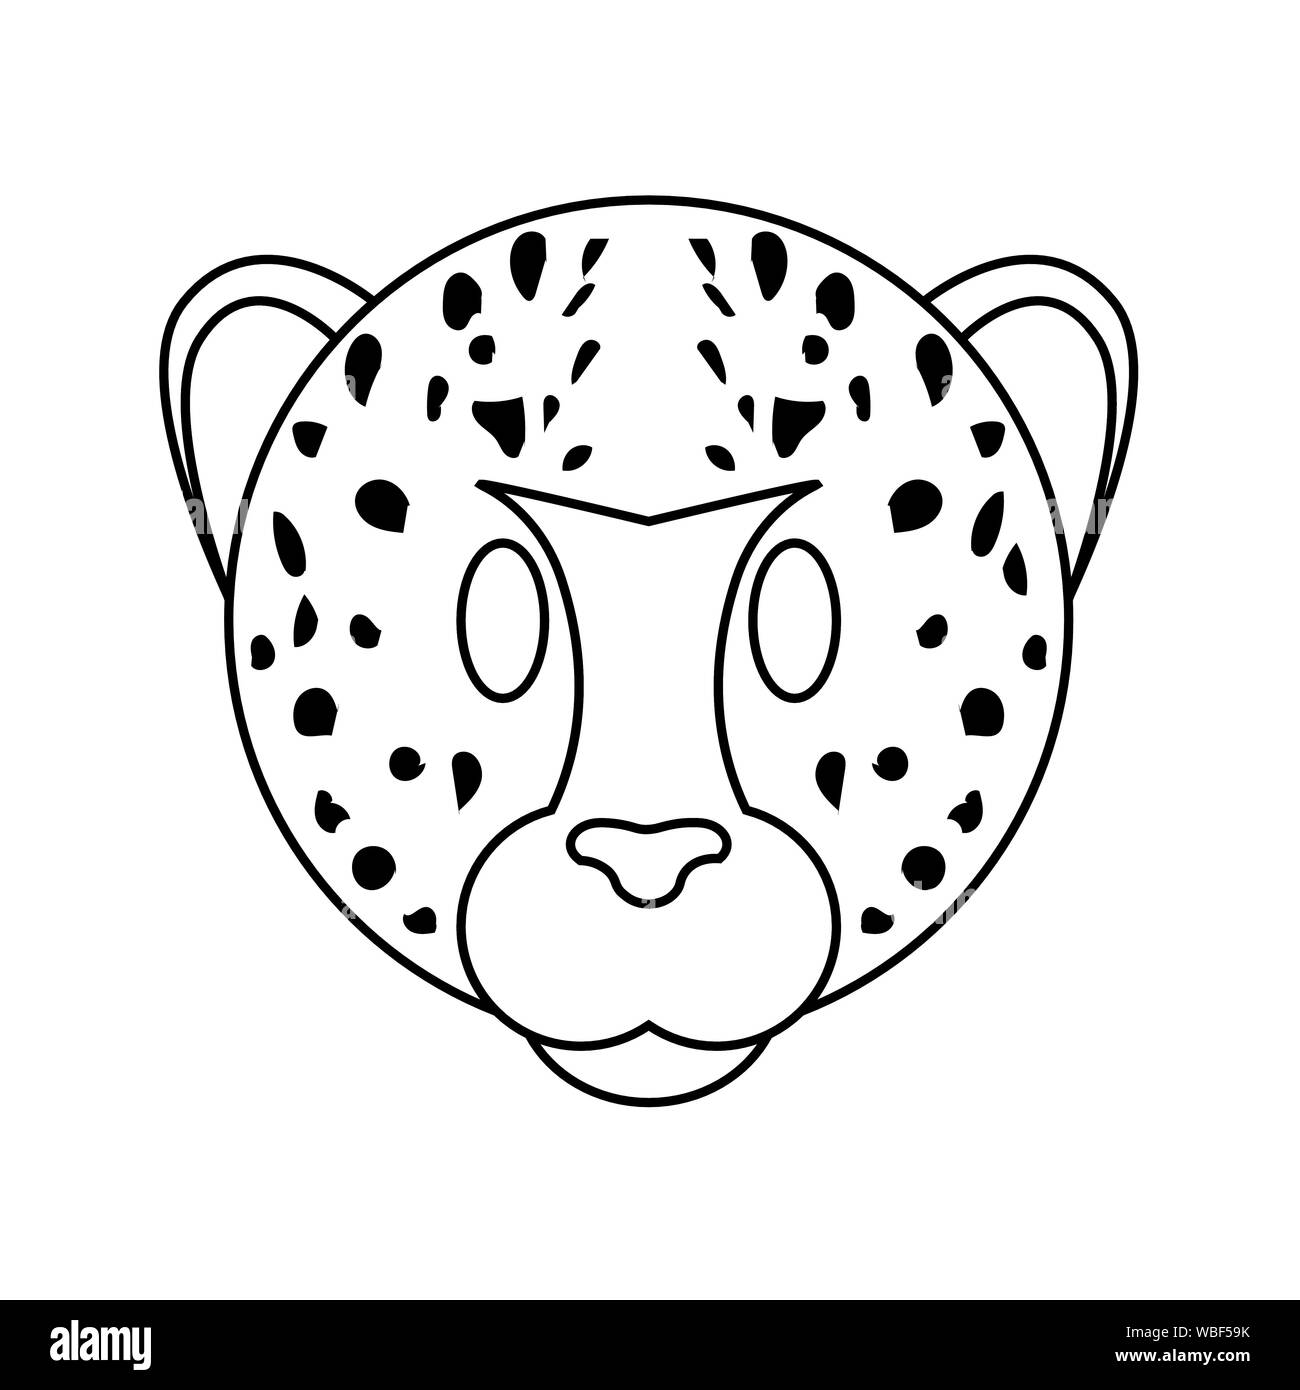 Cute Cheetah face Stock Vector Image & Art - Alamy